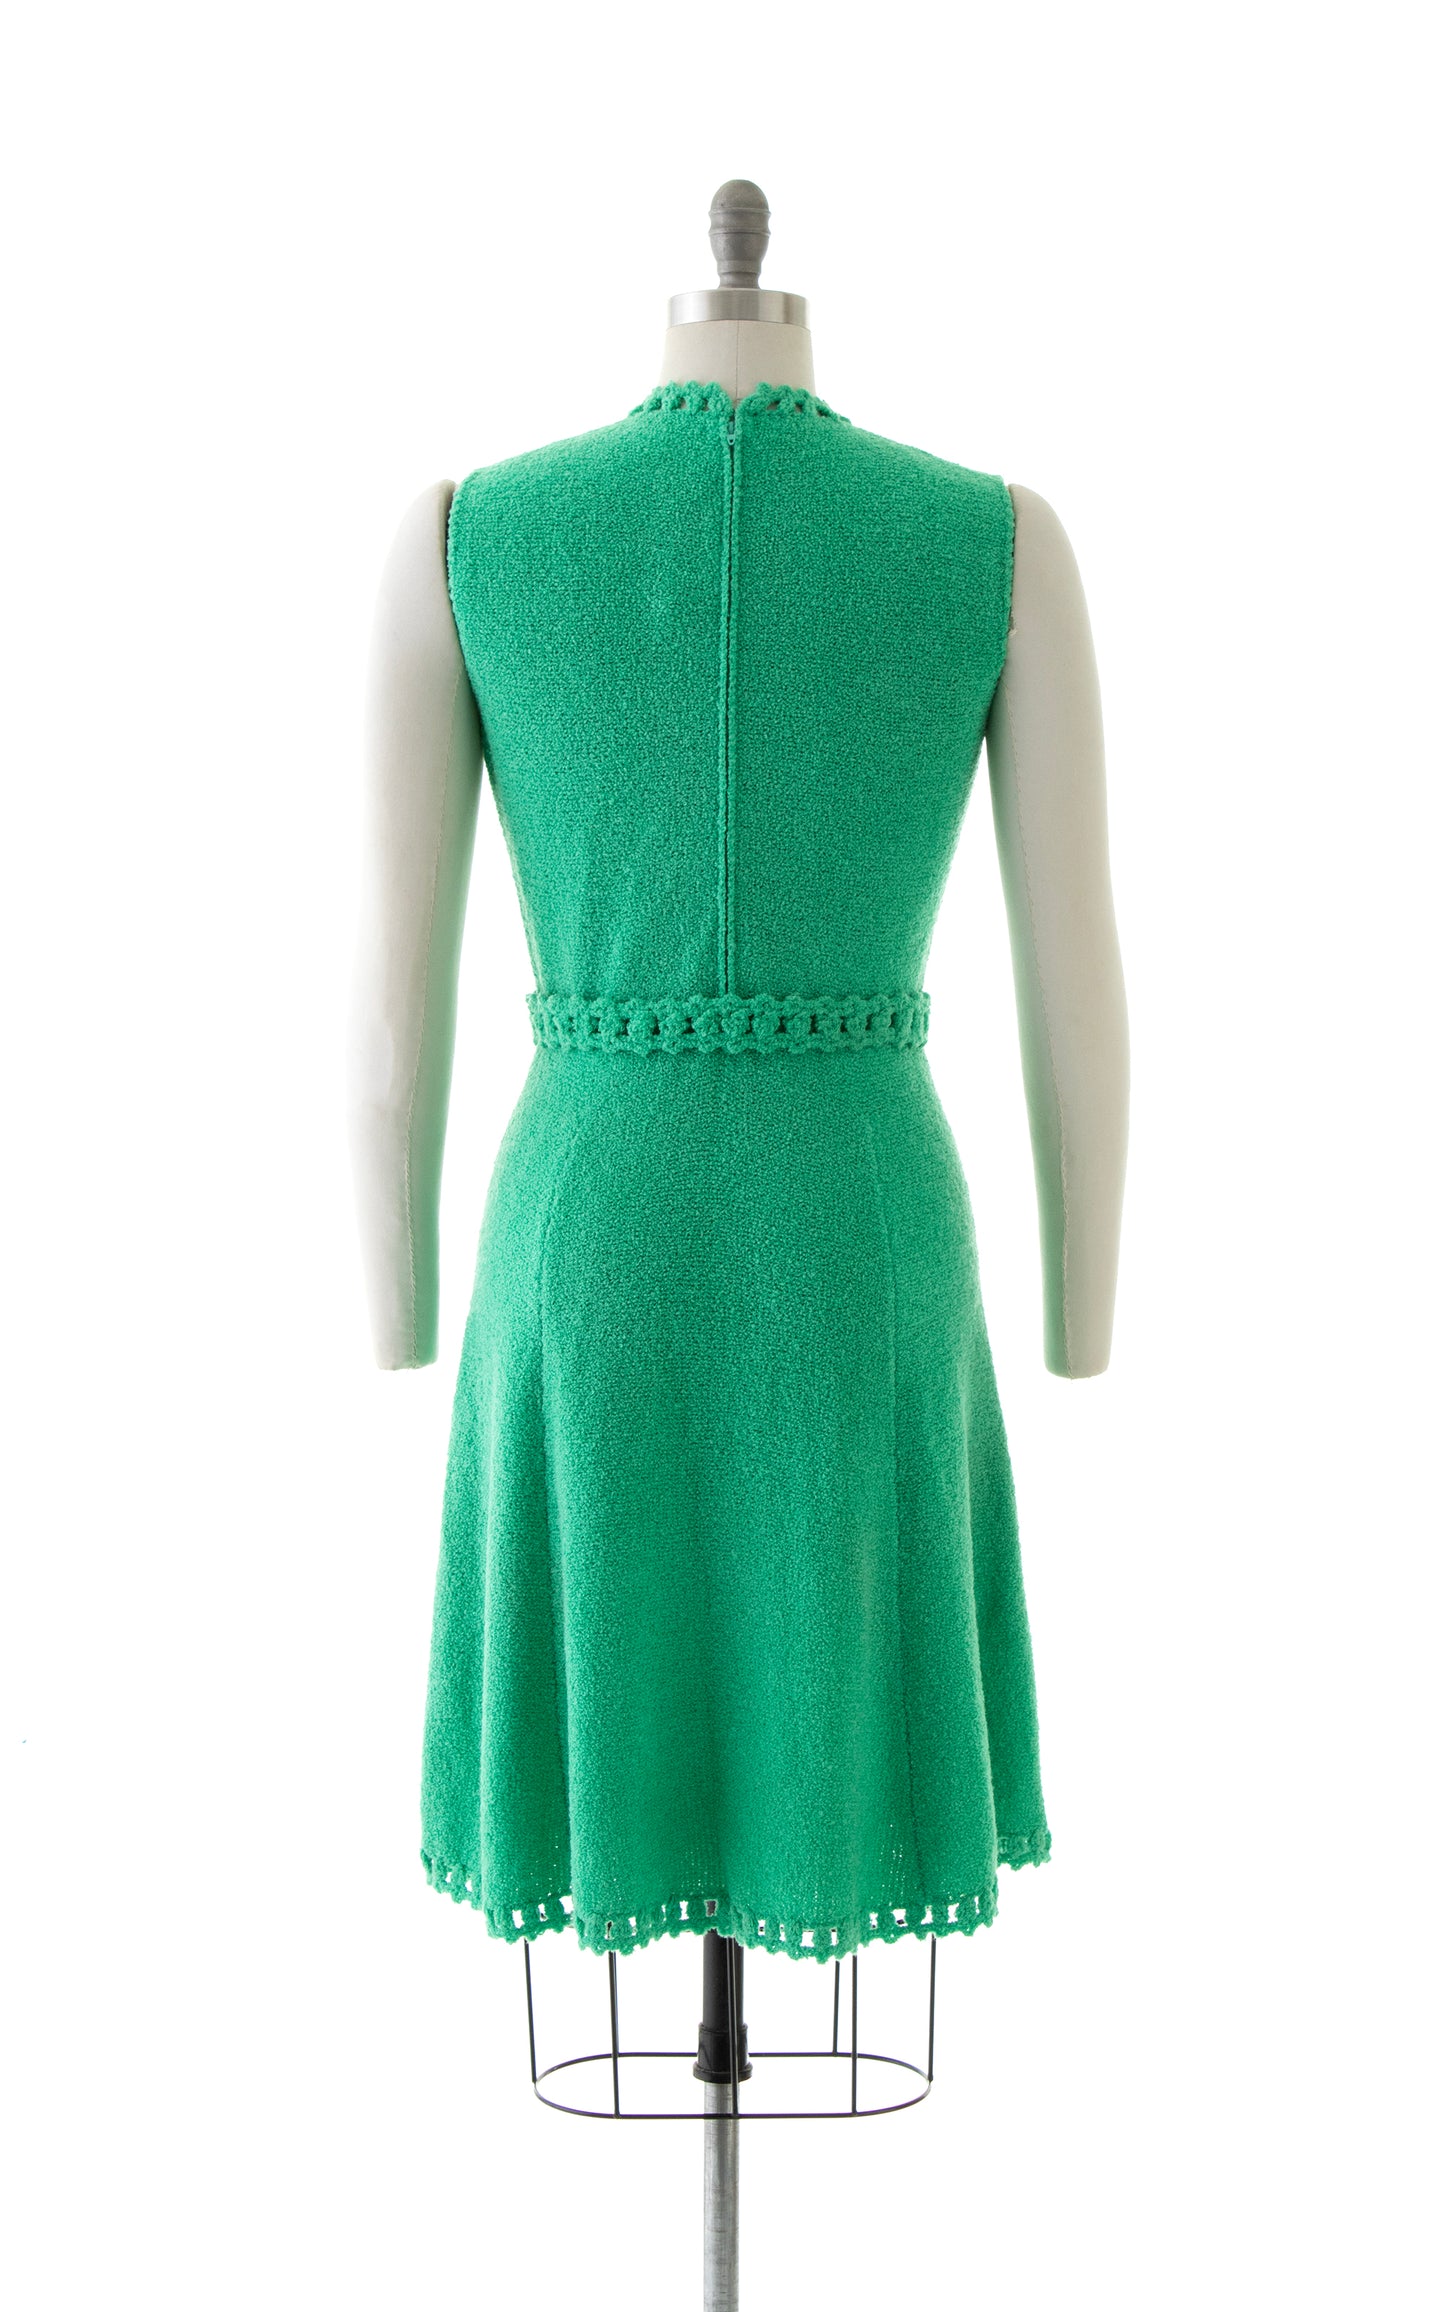 NEW ARRIVAL || 1960s ST JOHN KNITS Sweater Dress | small/medium